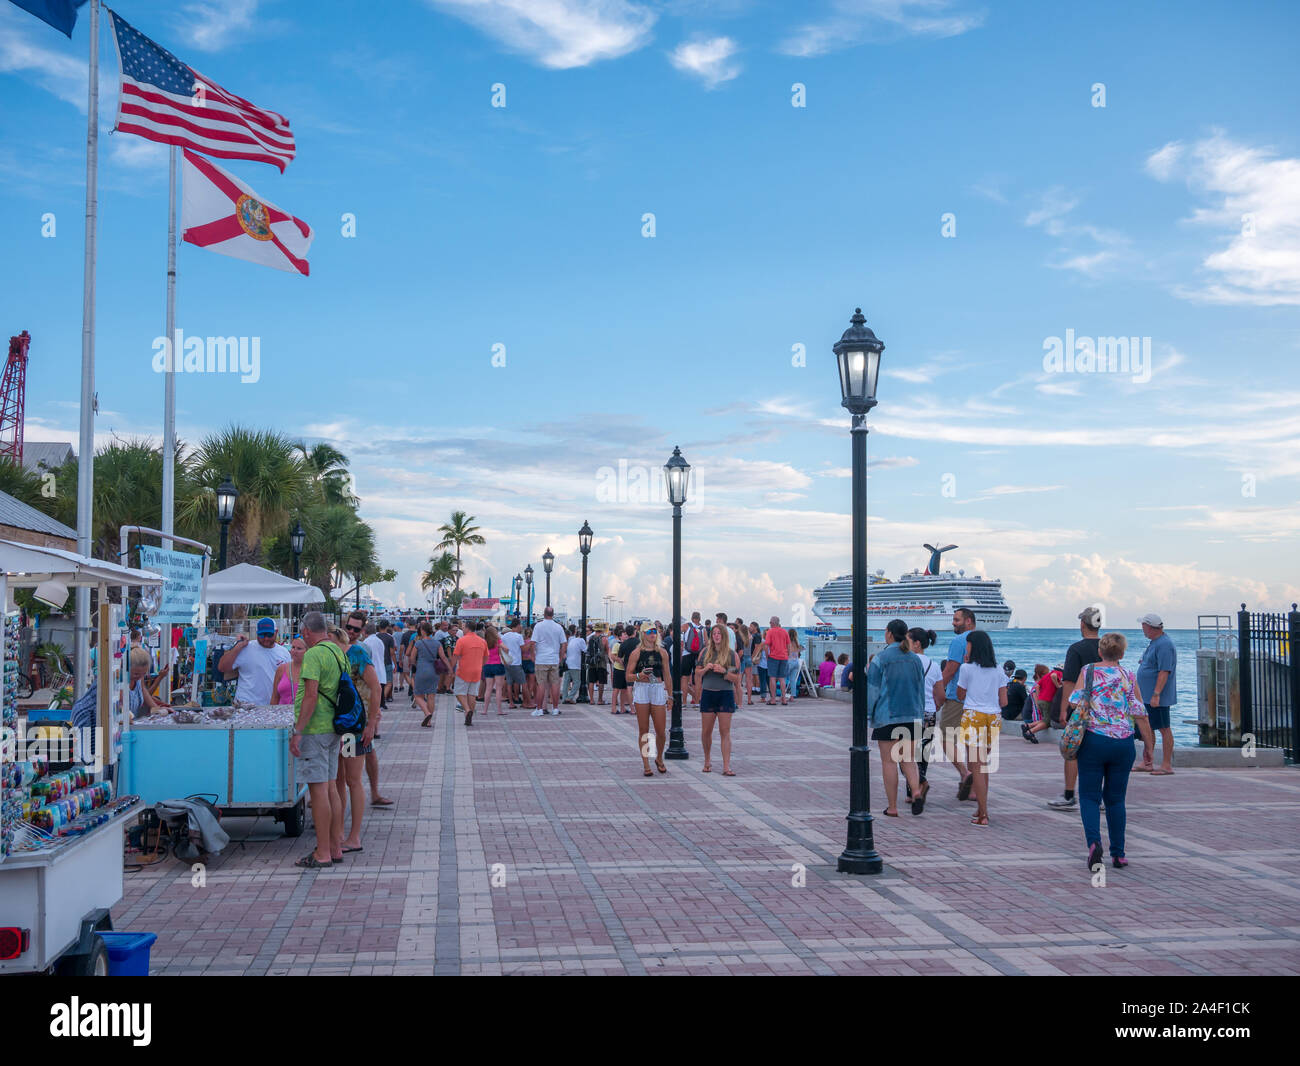 Key West, Florida - August 2019: Menschen erwartet Sonnenuntergang am Mallory Square in Key West, USA. Dieser Ort ist die populärste Sunset Point in Key West. Stockfoto